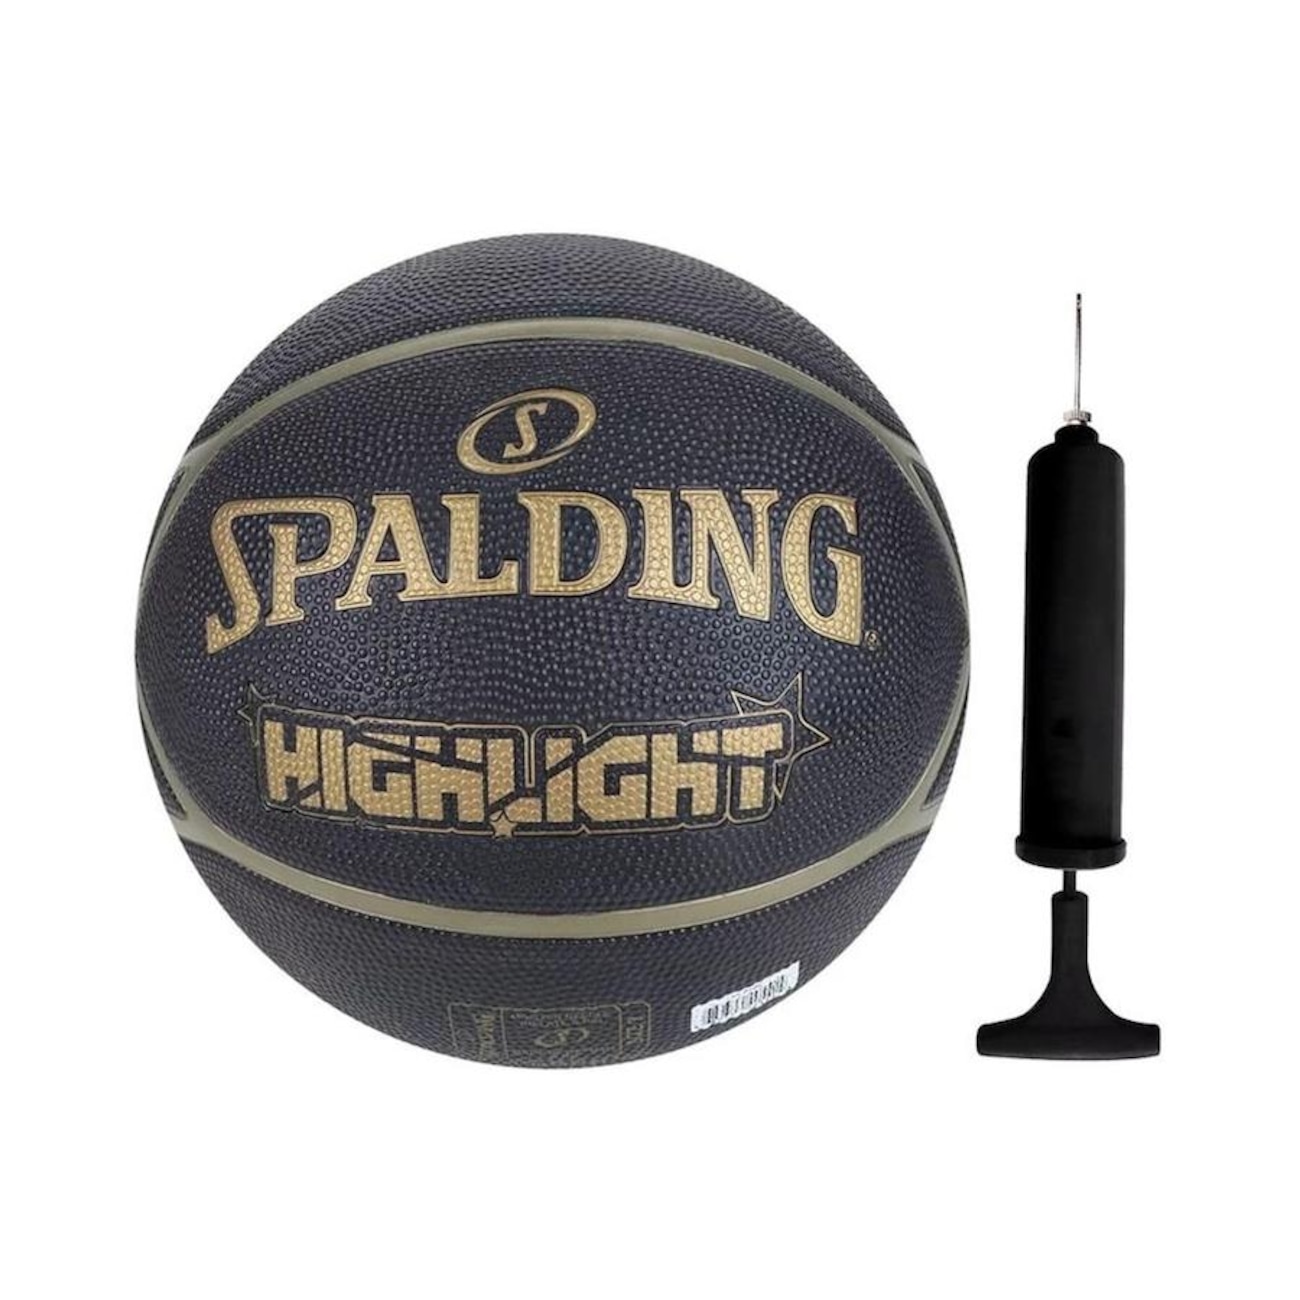 Bola de Basquete Spalding Highlight + Bomba de Ar